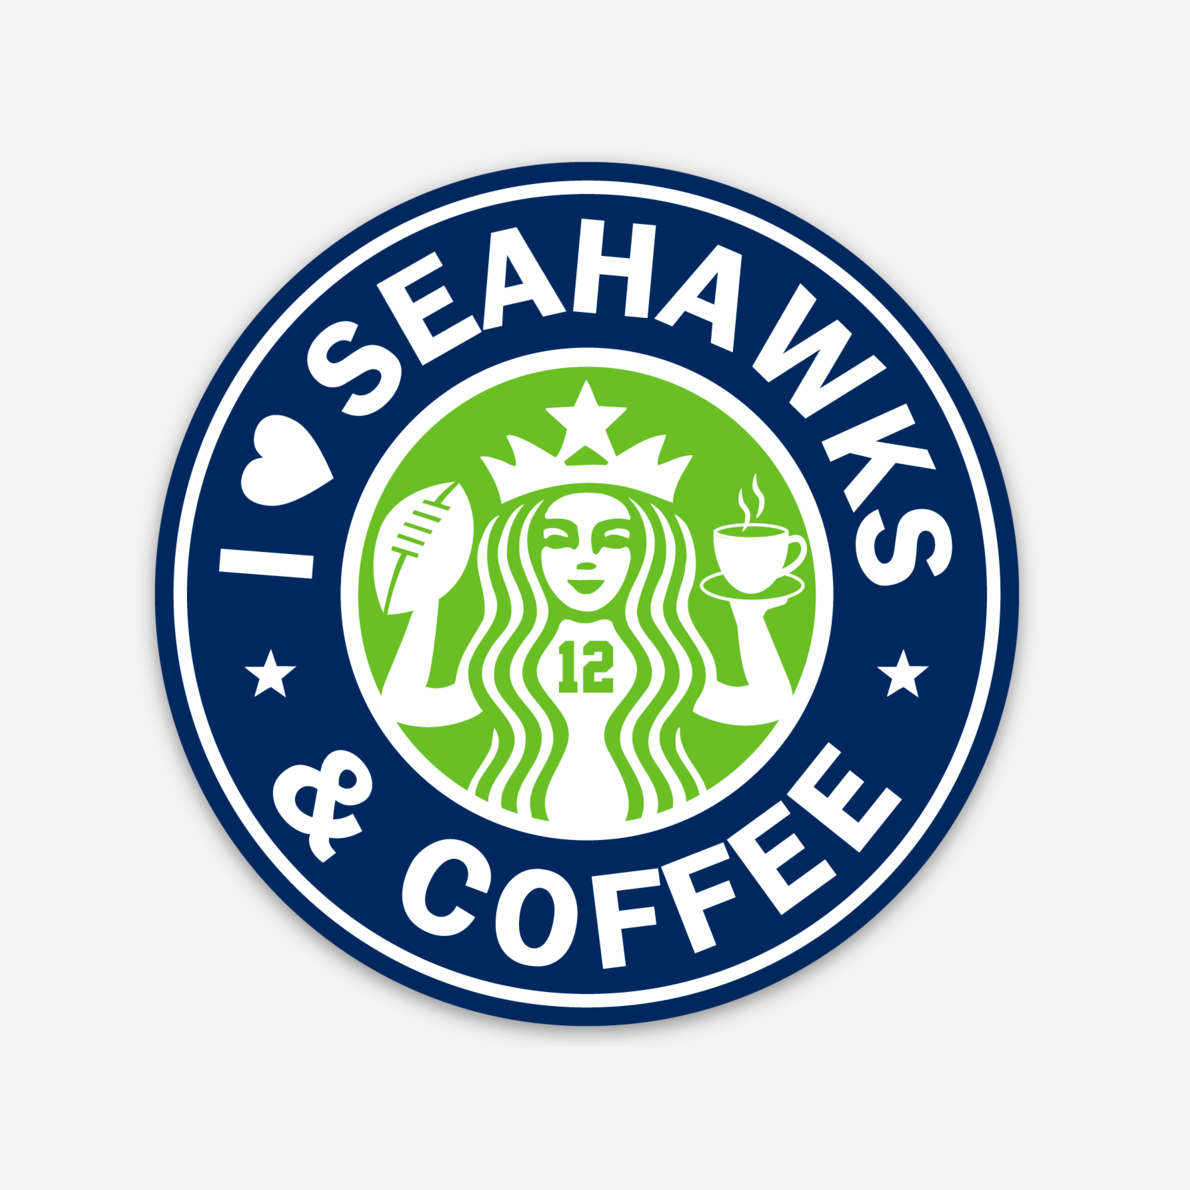 Seahawks & Coffee